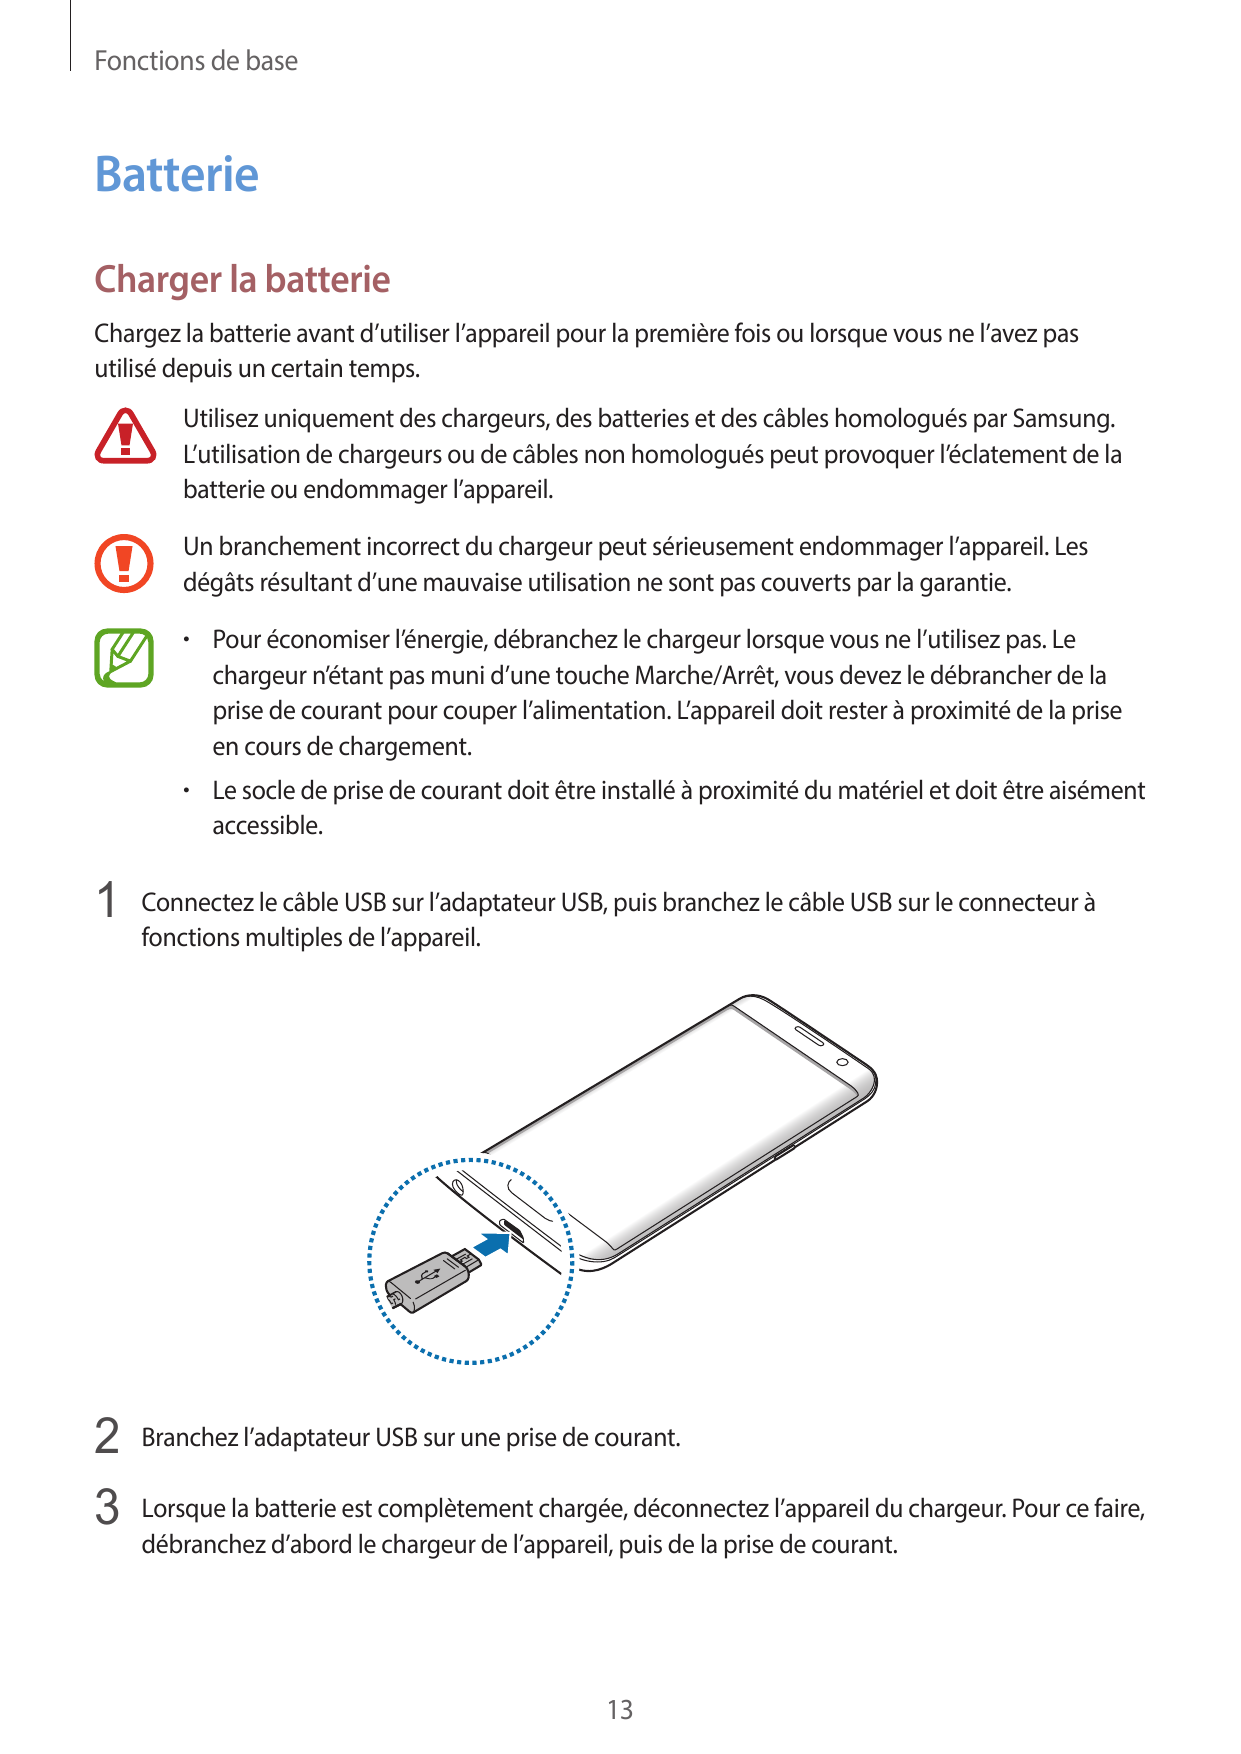 Fonctions de baseBatterieCharger la batterieChargez la batterie avant d’utiliser l’appareil pour la première fois ou lorsque vou